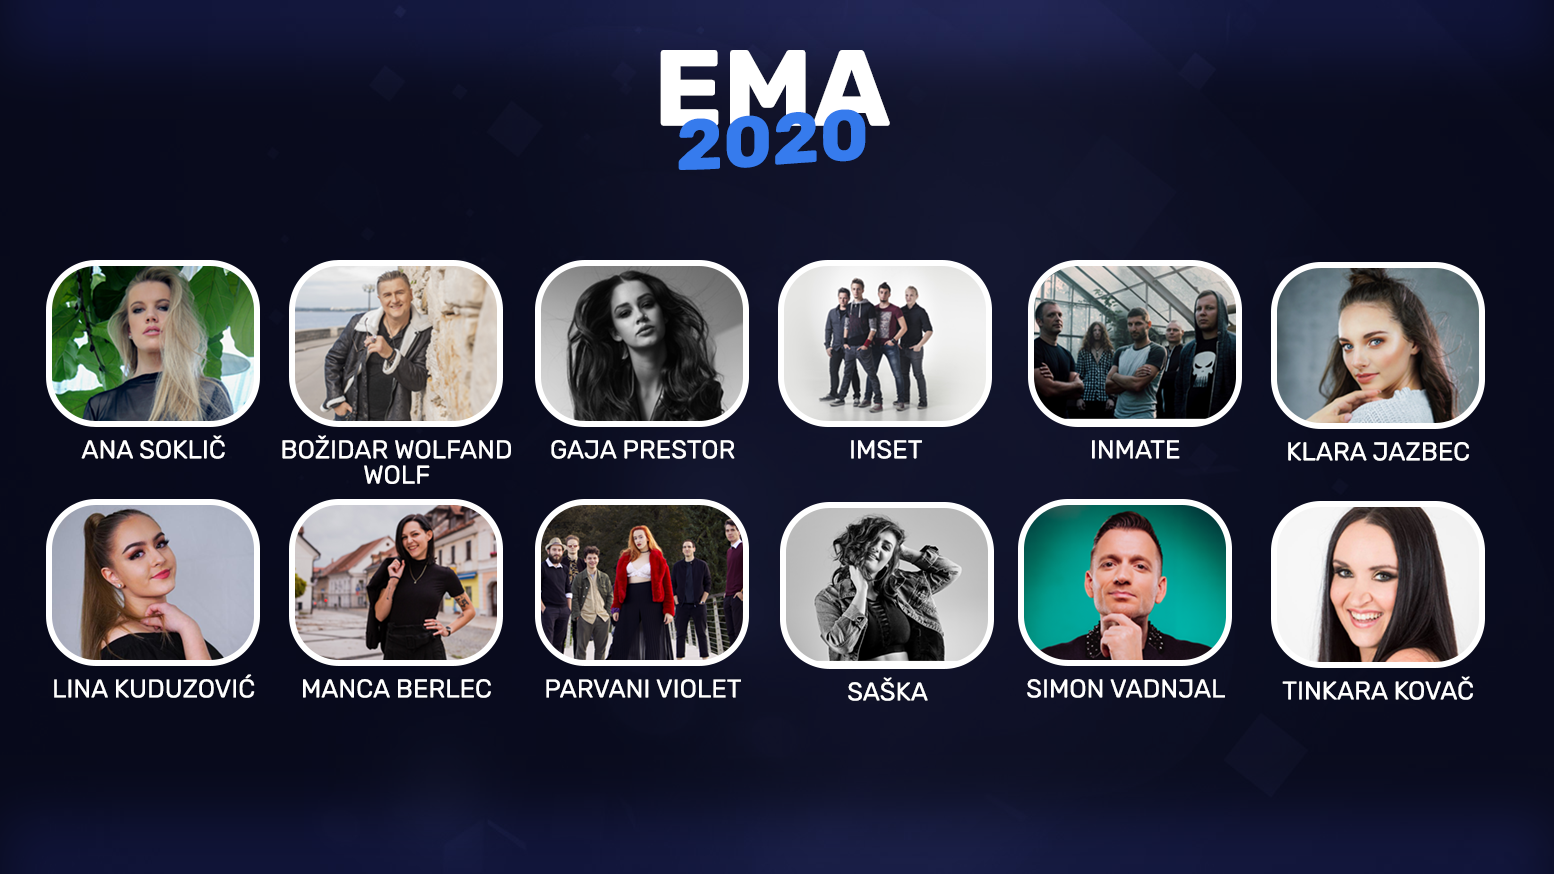 Eslovenia elegirá esta noche a su representante en eurovisión con la Gran Final del EMA 2020